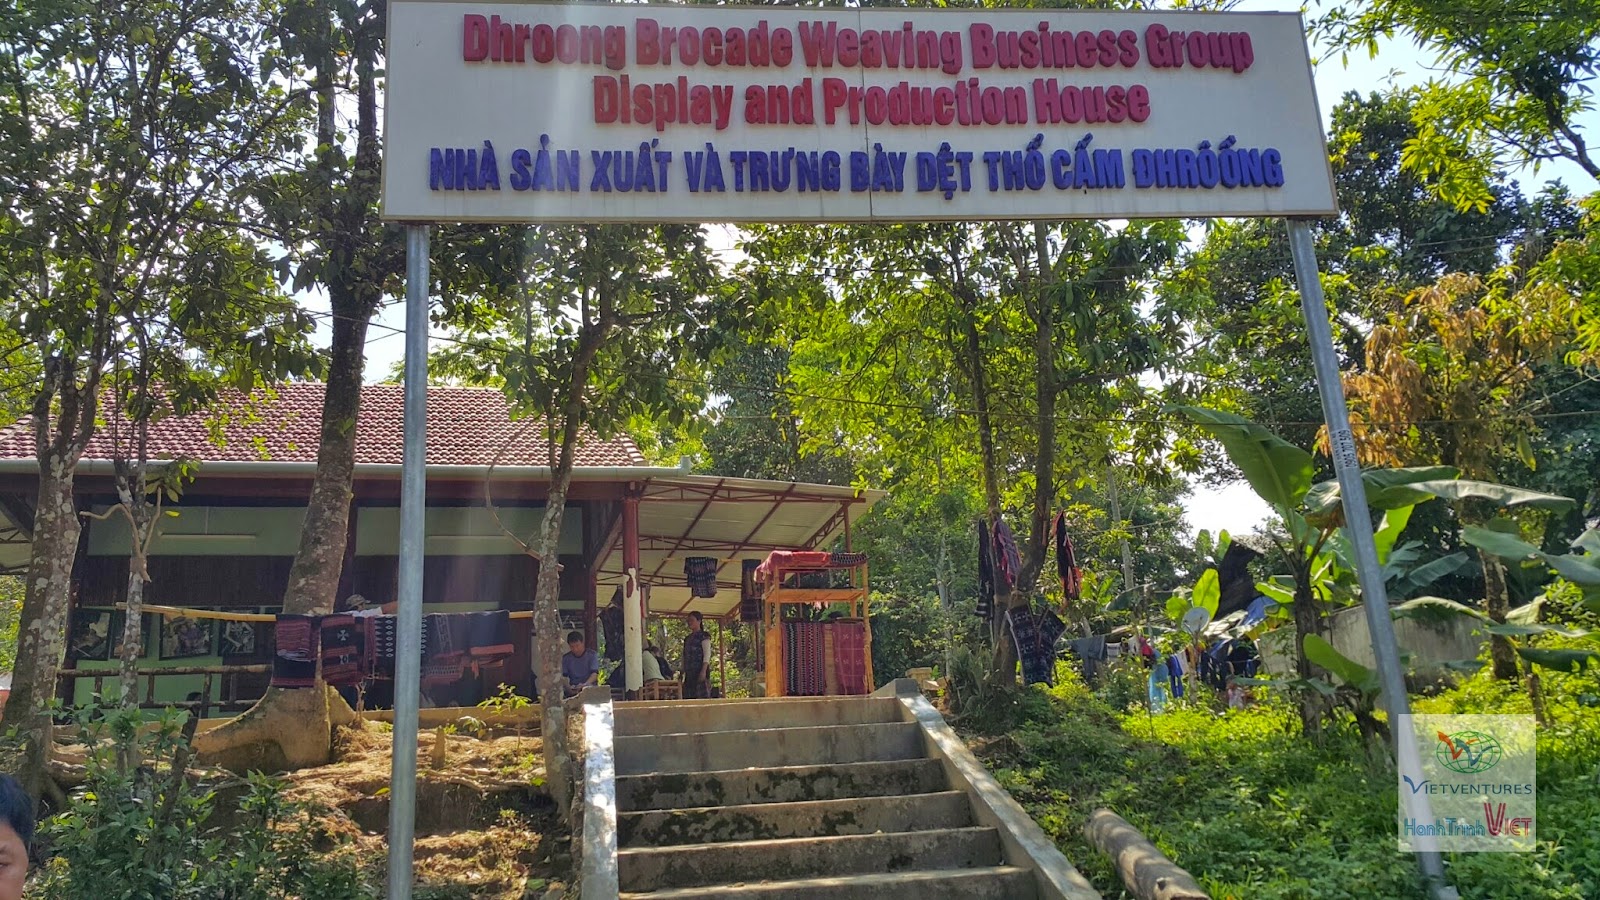 Du lịch cộng đồng thôn Dhroong, Đông Giang, Quảng Nam